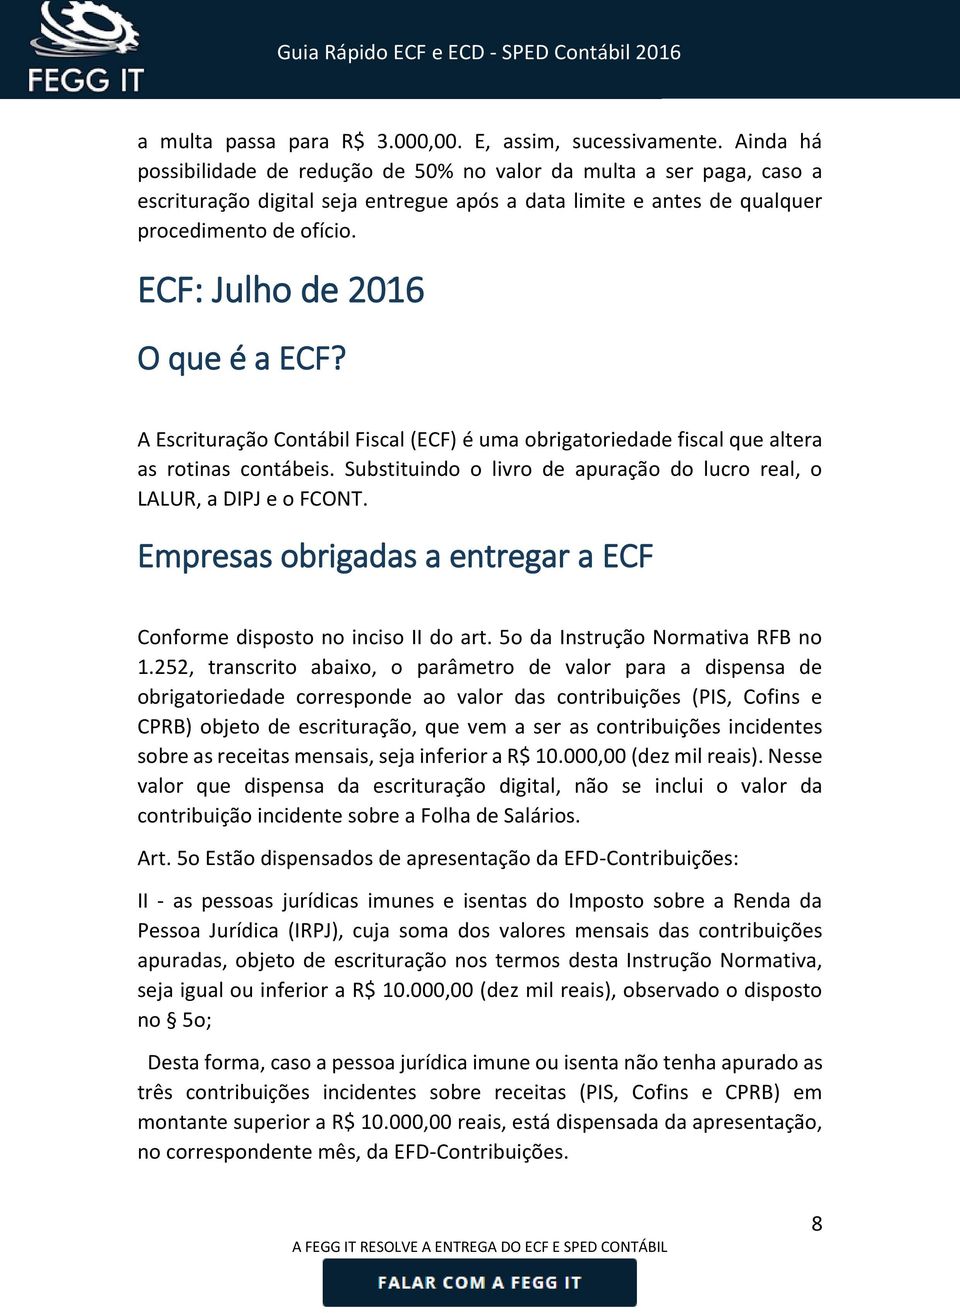 ECF: Julho de 2016 O que é a ECF? A Escrituração Contábil Fiscal (ECF) é uma obrigatoriedade fiscal que altera as rotinas contábeis.